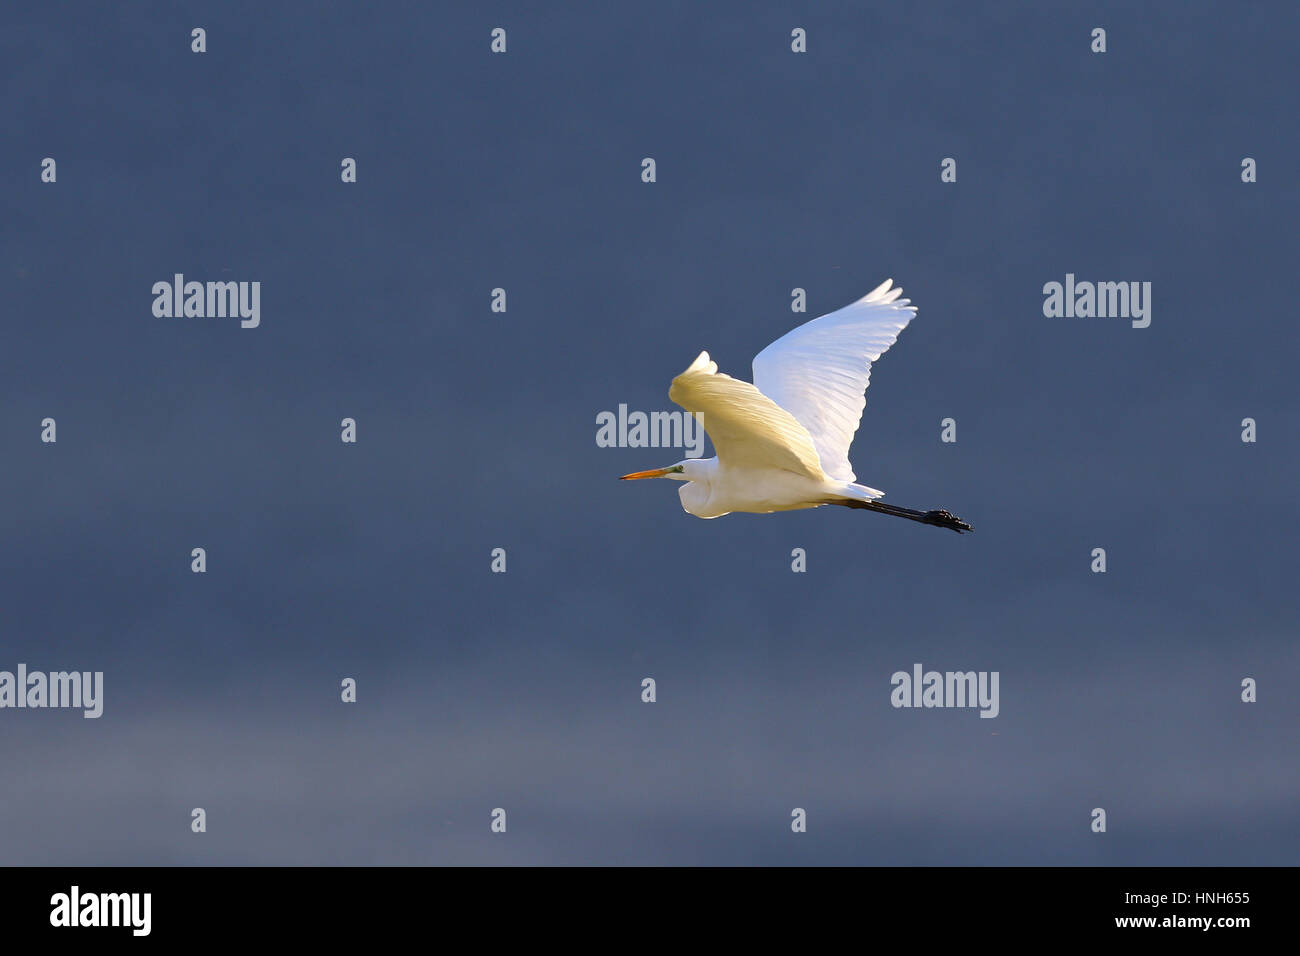 White great egret, egretta alba, in flight against gray sky and fog Stock Photo